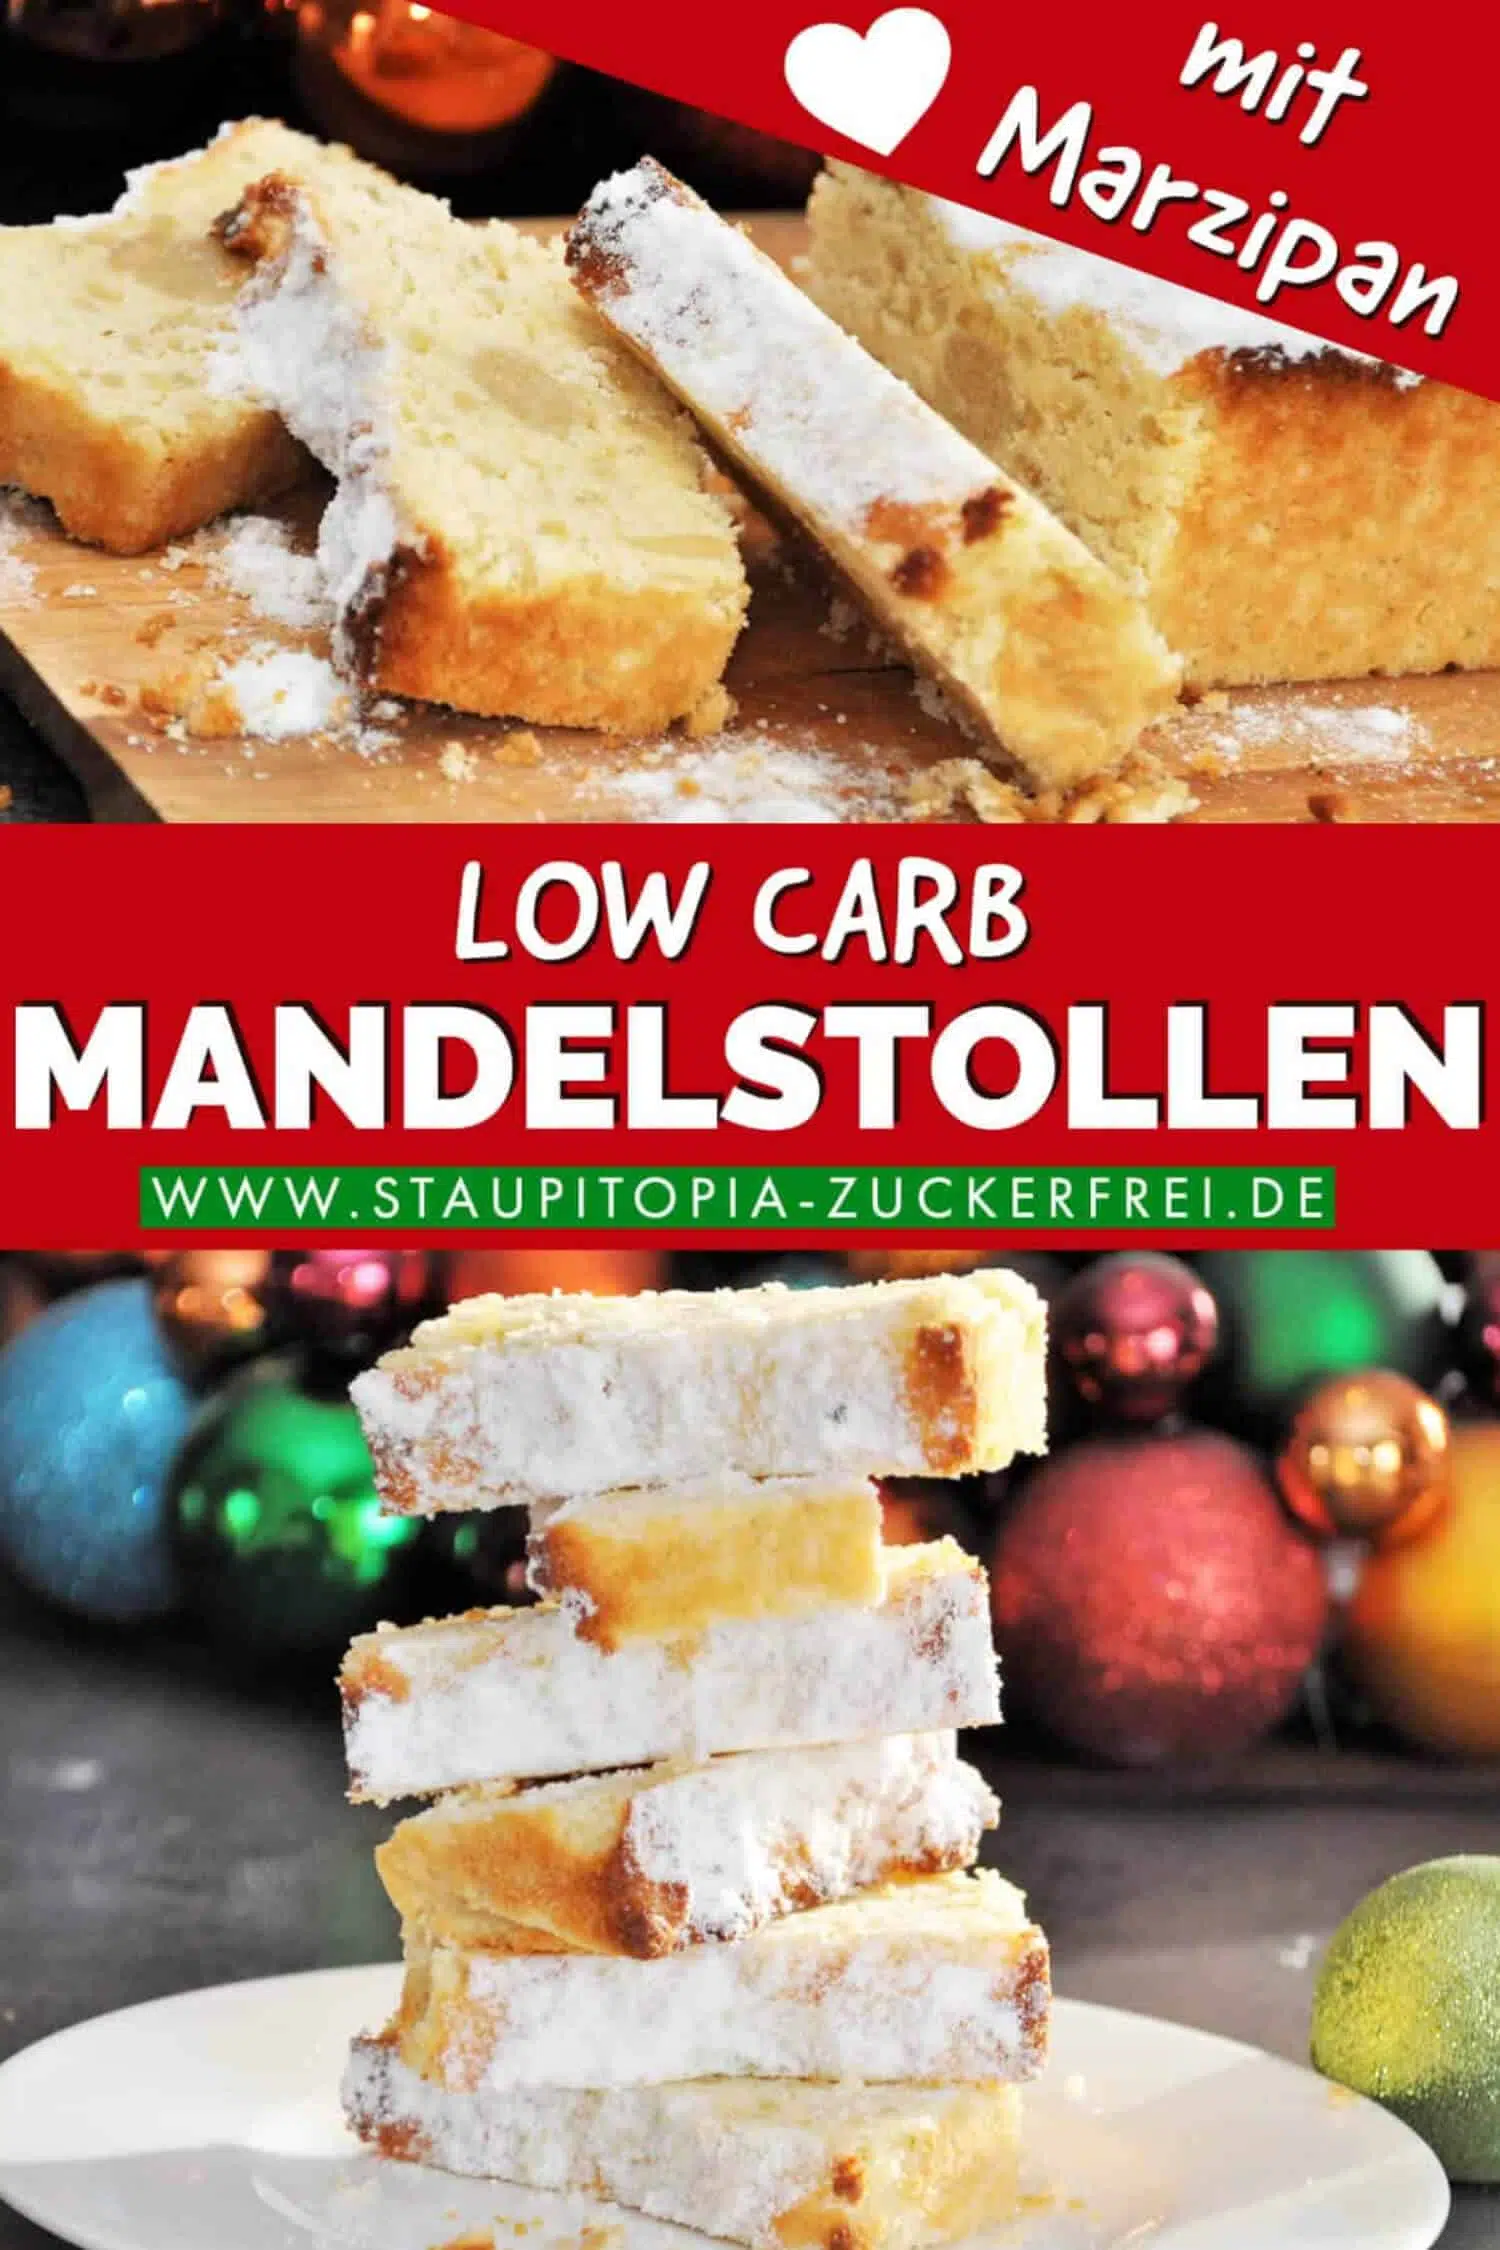 Low Carb Backen zu Weihnachten: Dieser Low Carb Mandelstollen mit Marzipan wird dich begeistern. Er ist schnell zubereitet, glutenfrei und kommt natürlich ohne Zucker aus!